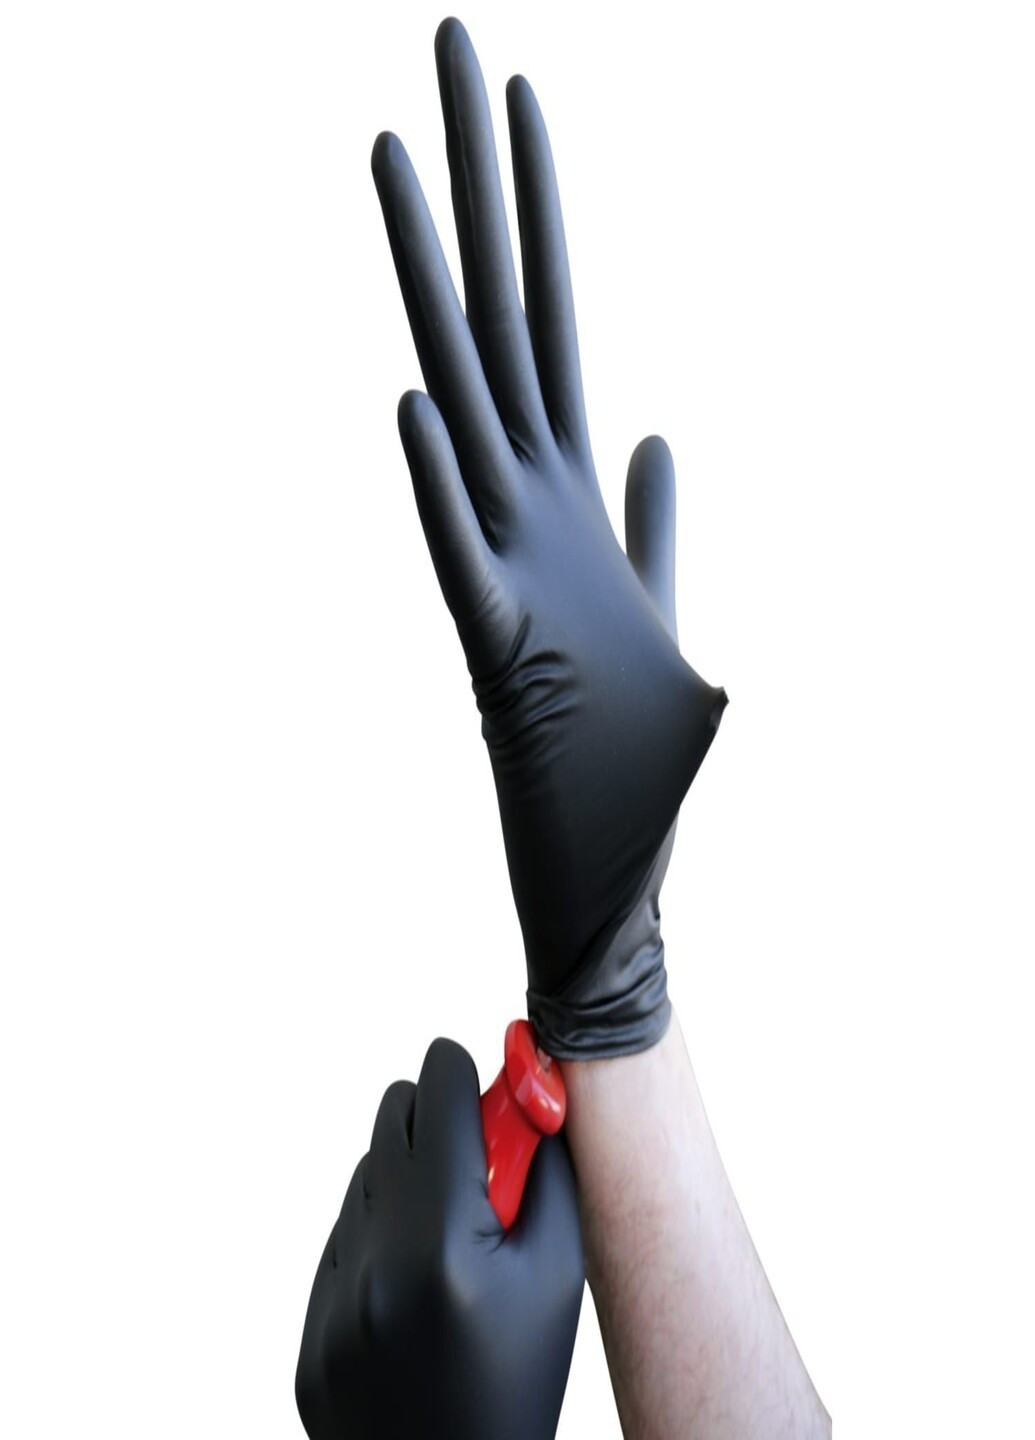 Нитриловые перчатки SafeTouch® без пудры текстурированные размер M 100 шт. Черные (5.0 г) Medicom (254918318)